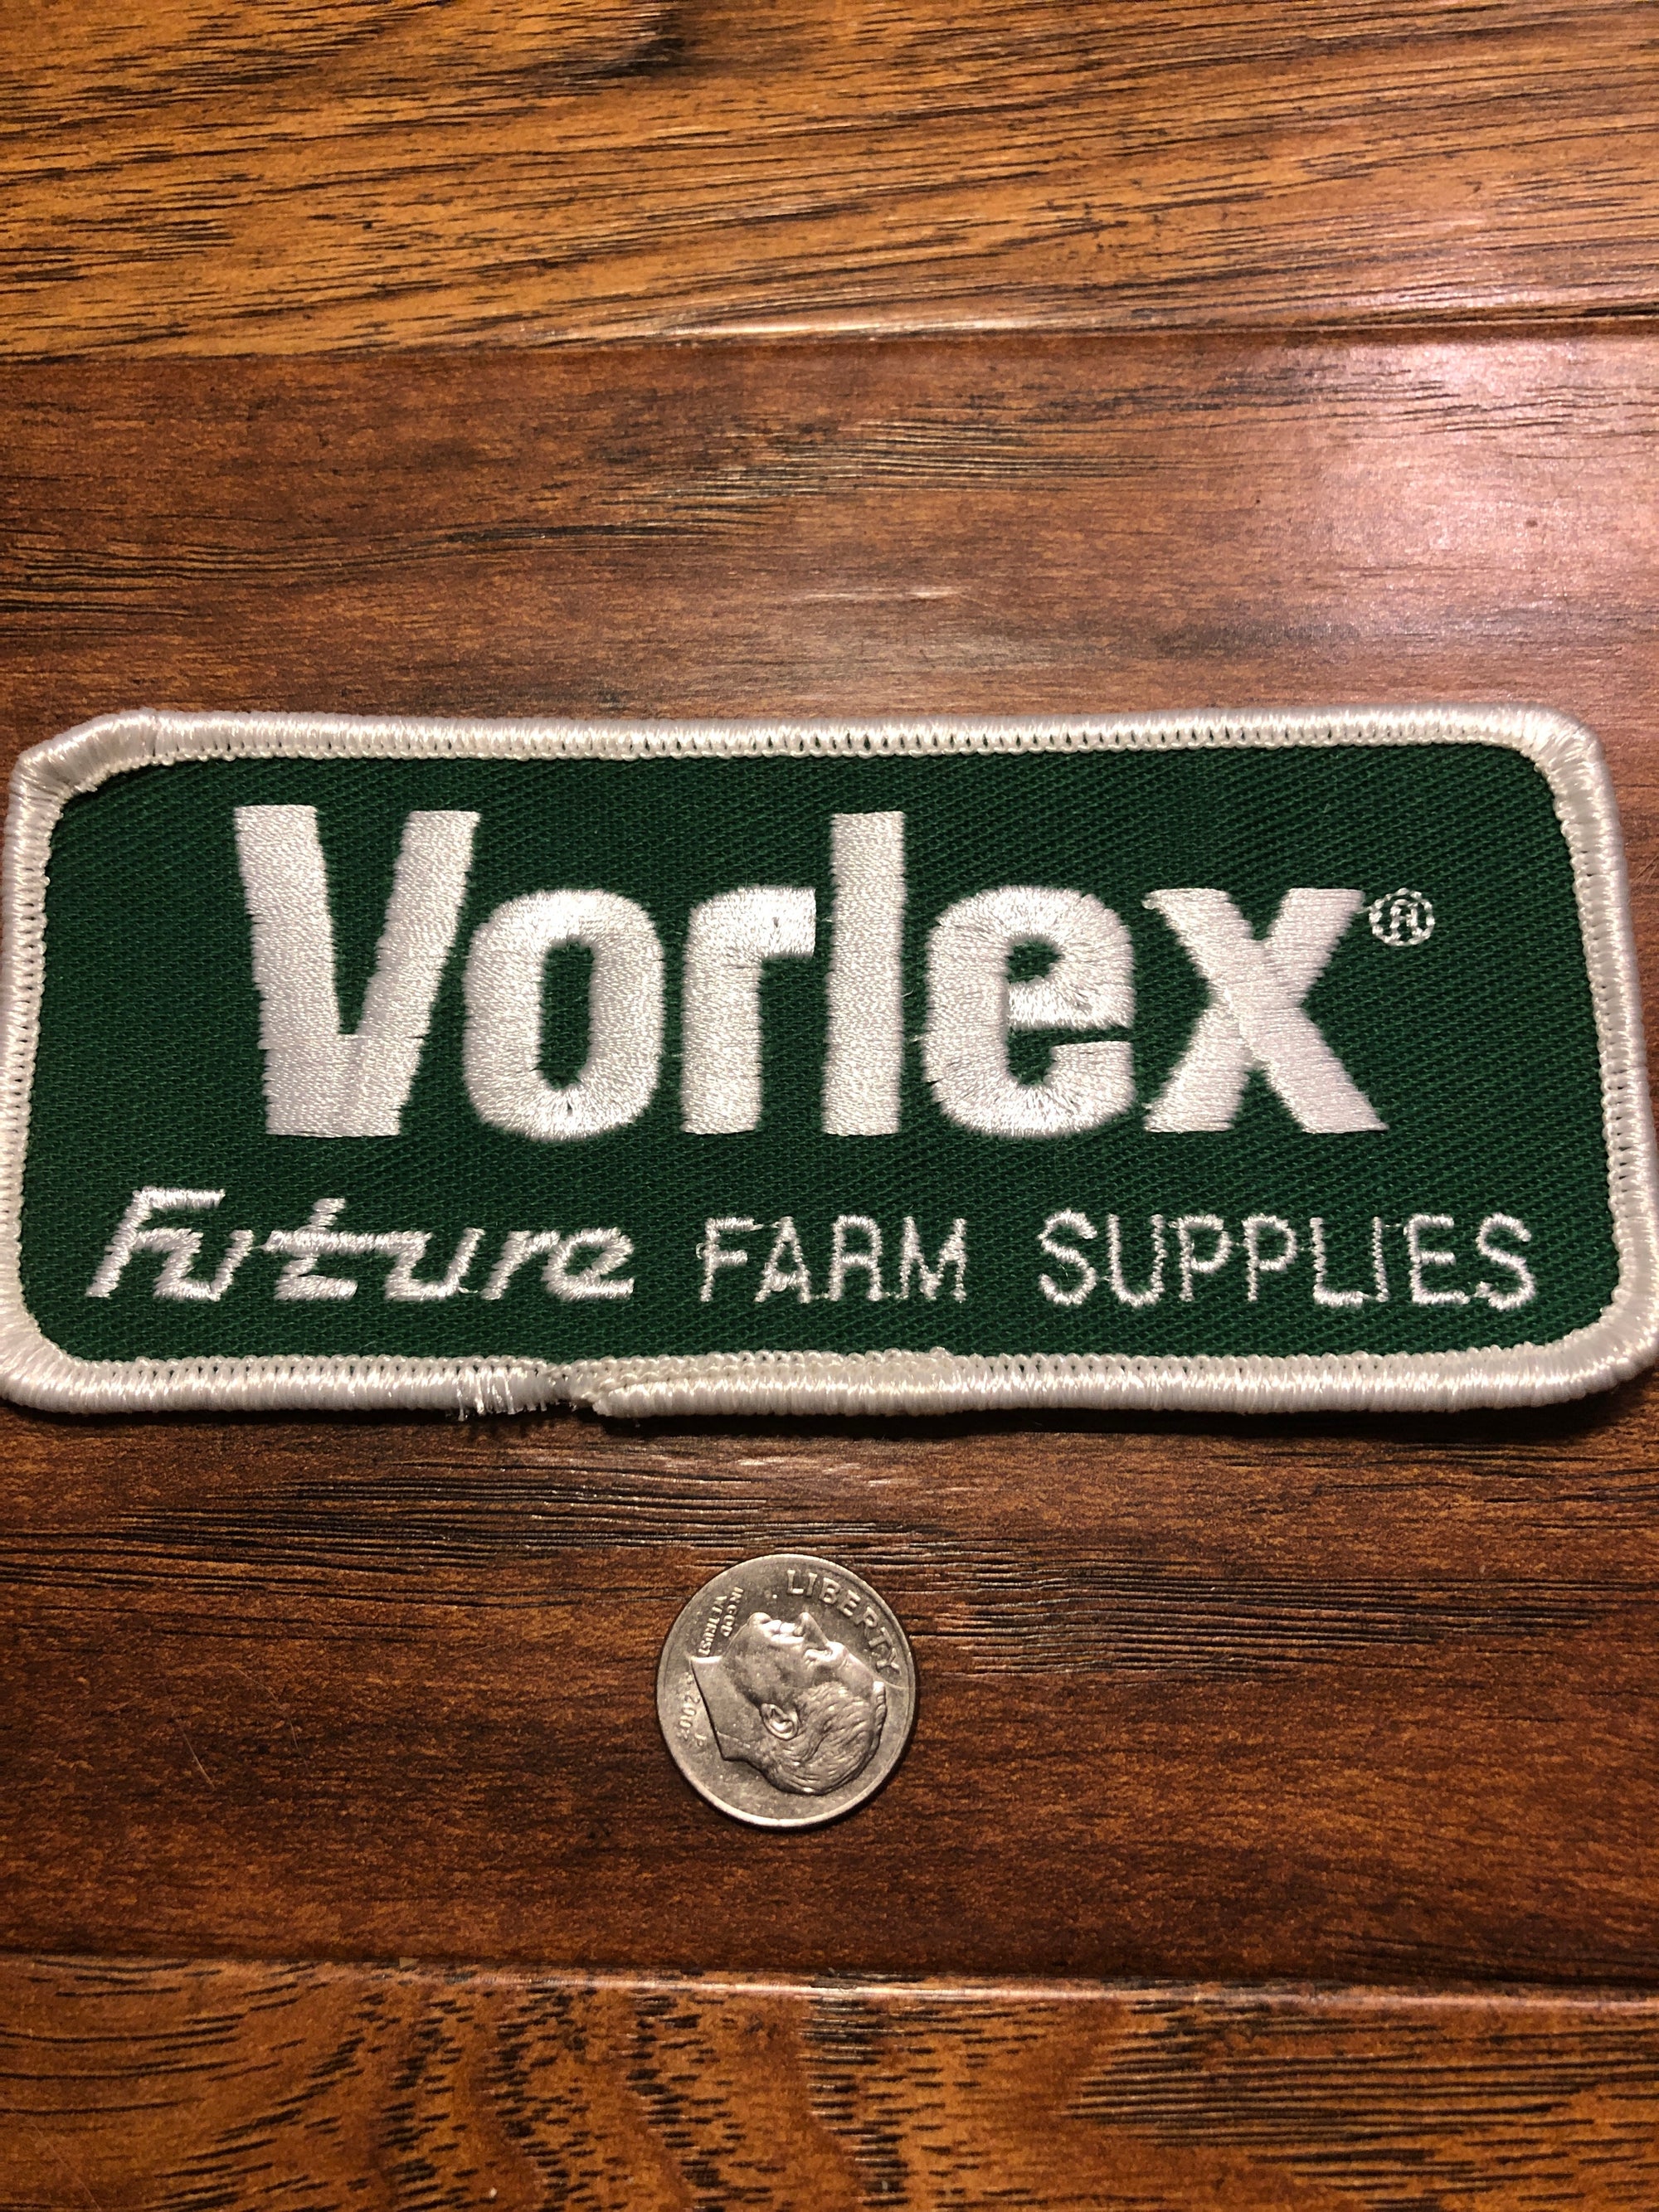 Vintage Vorlex